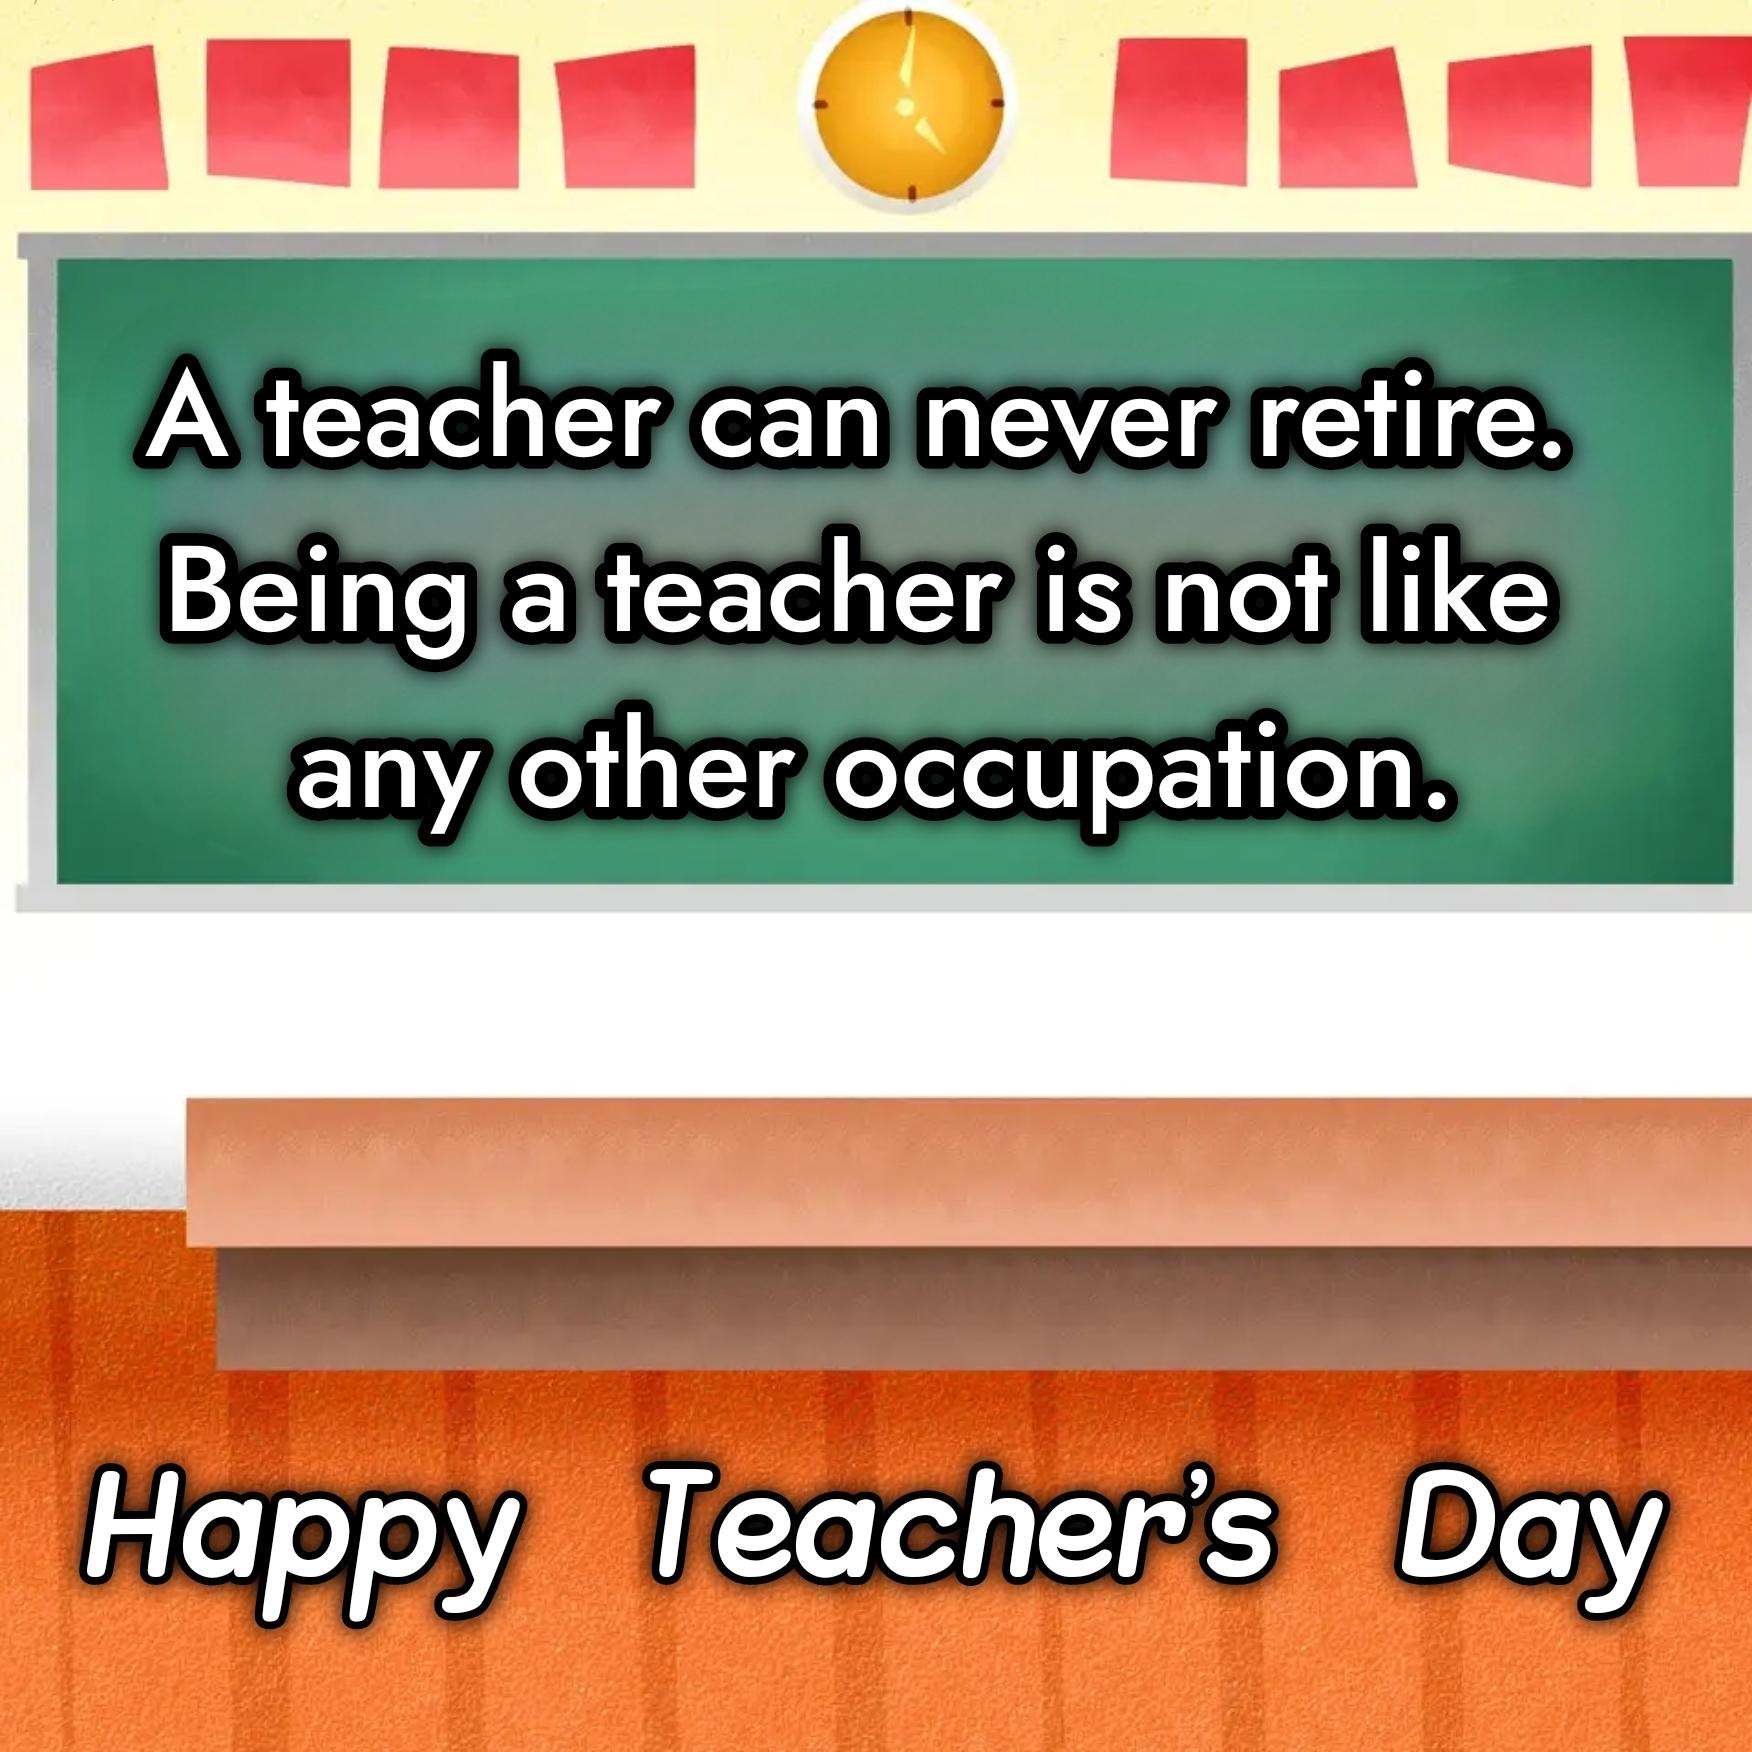 A teacher can never retire